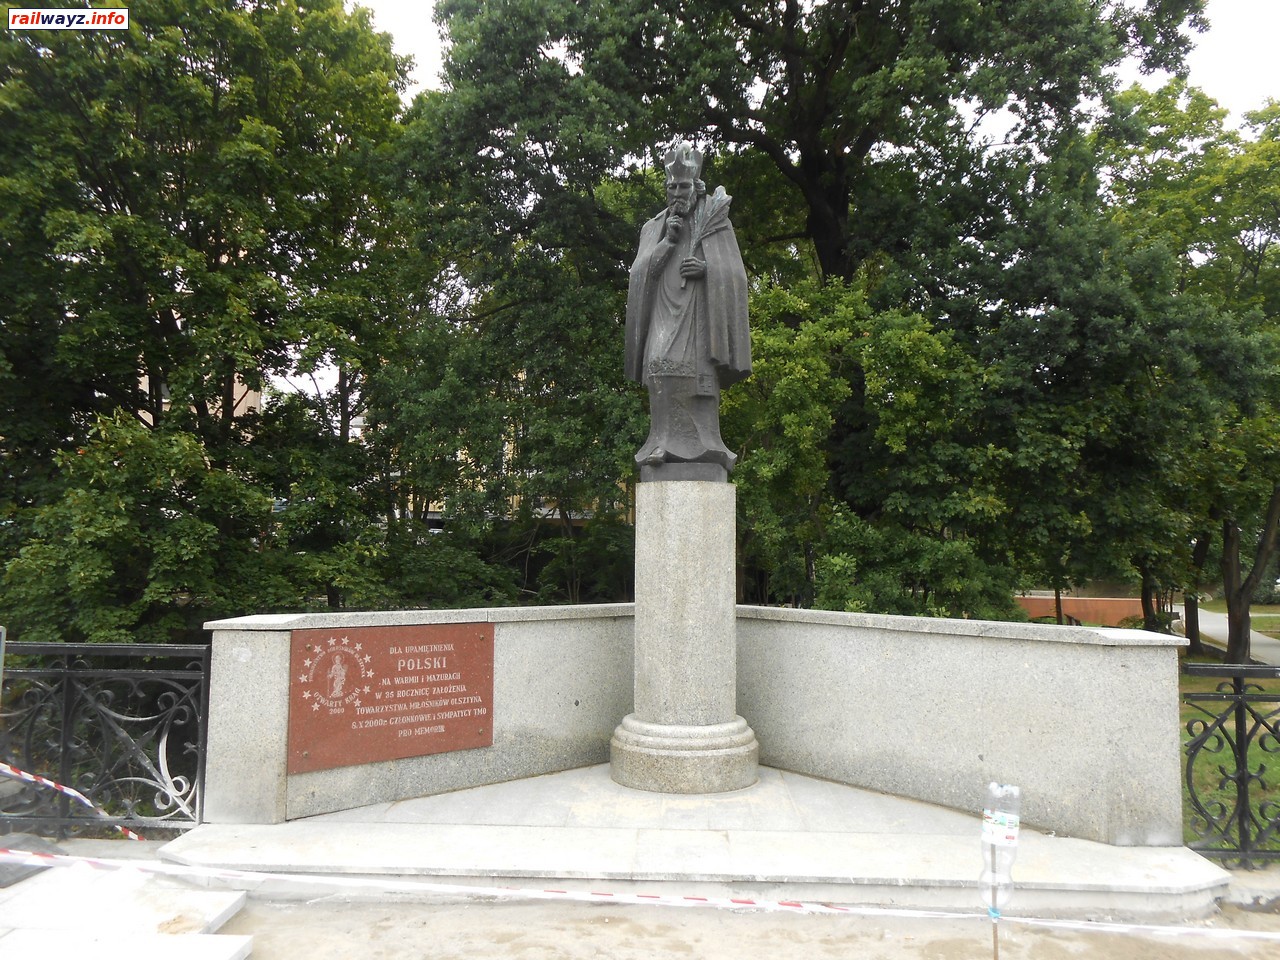 Памятник 35-летию Общества поклонников Ольштына